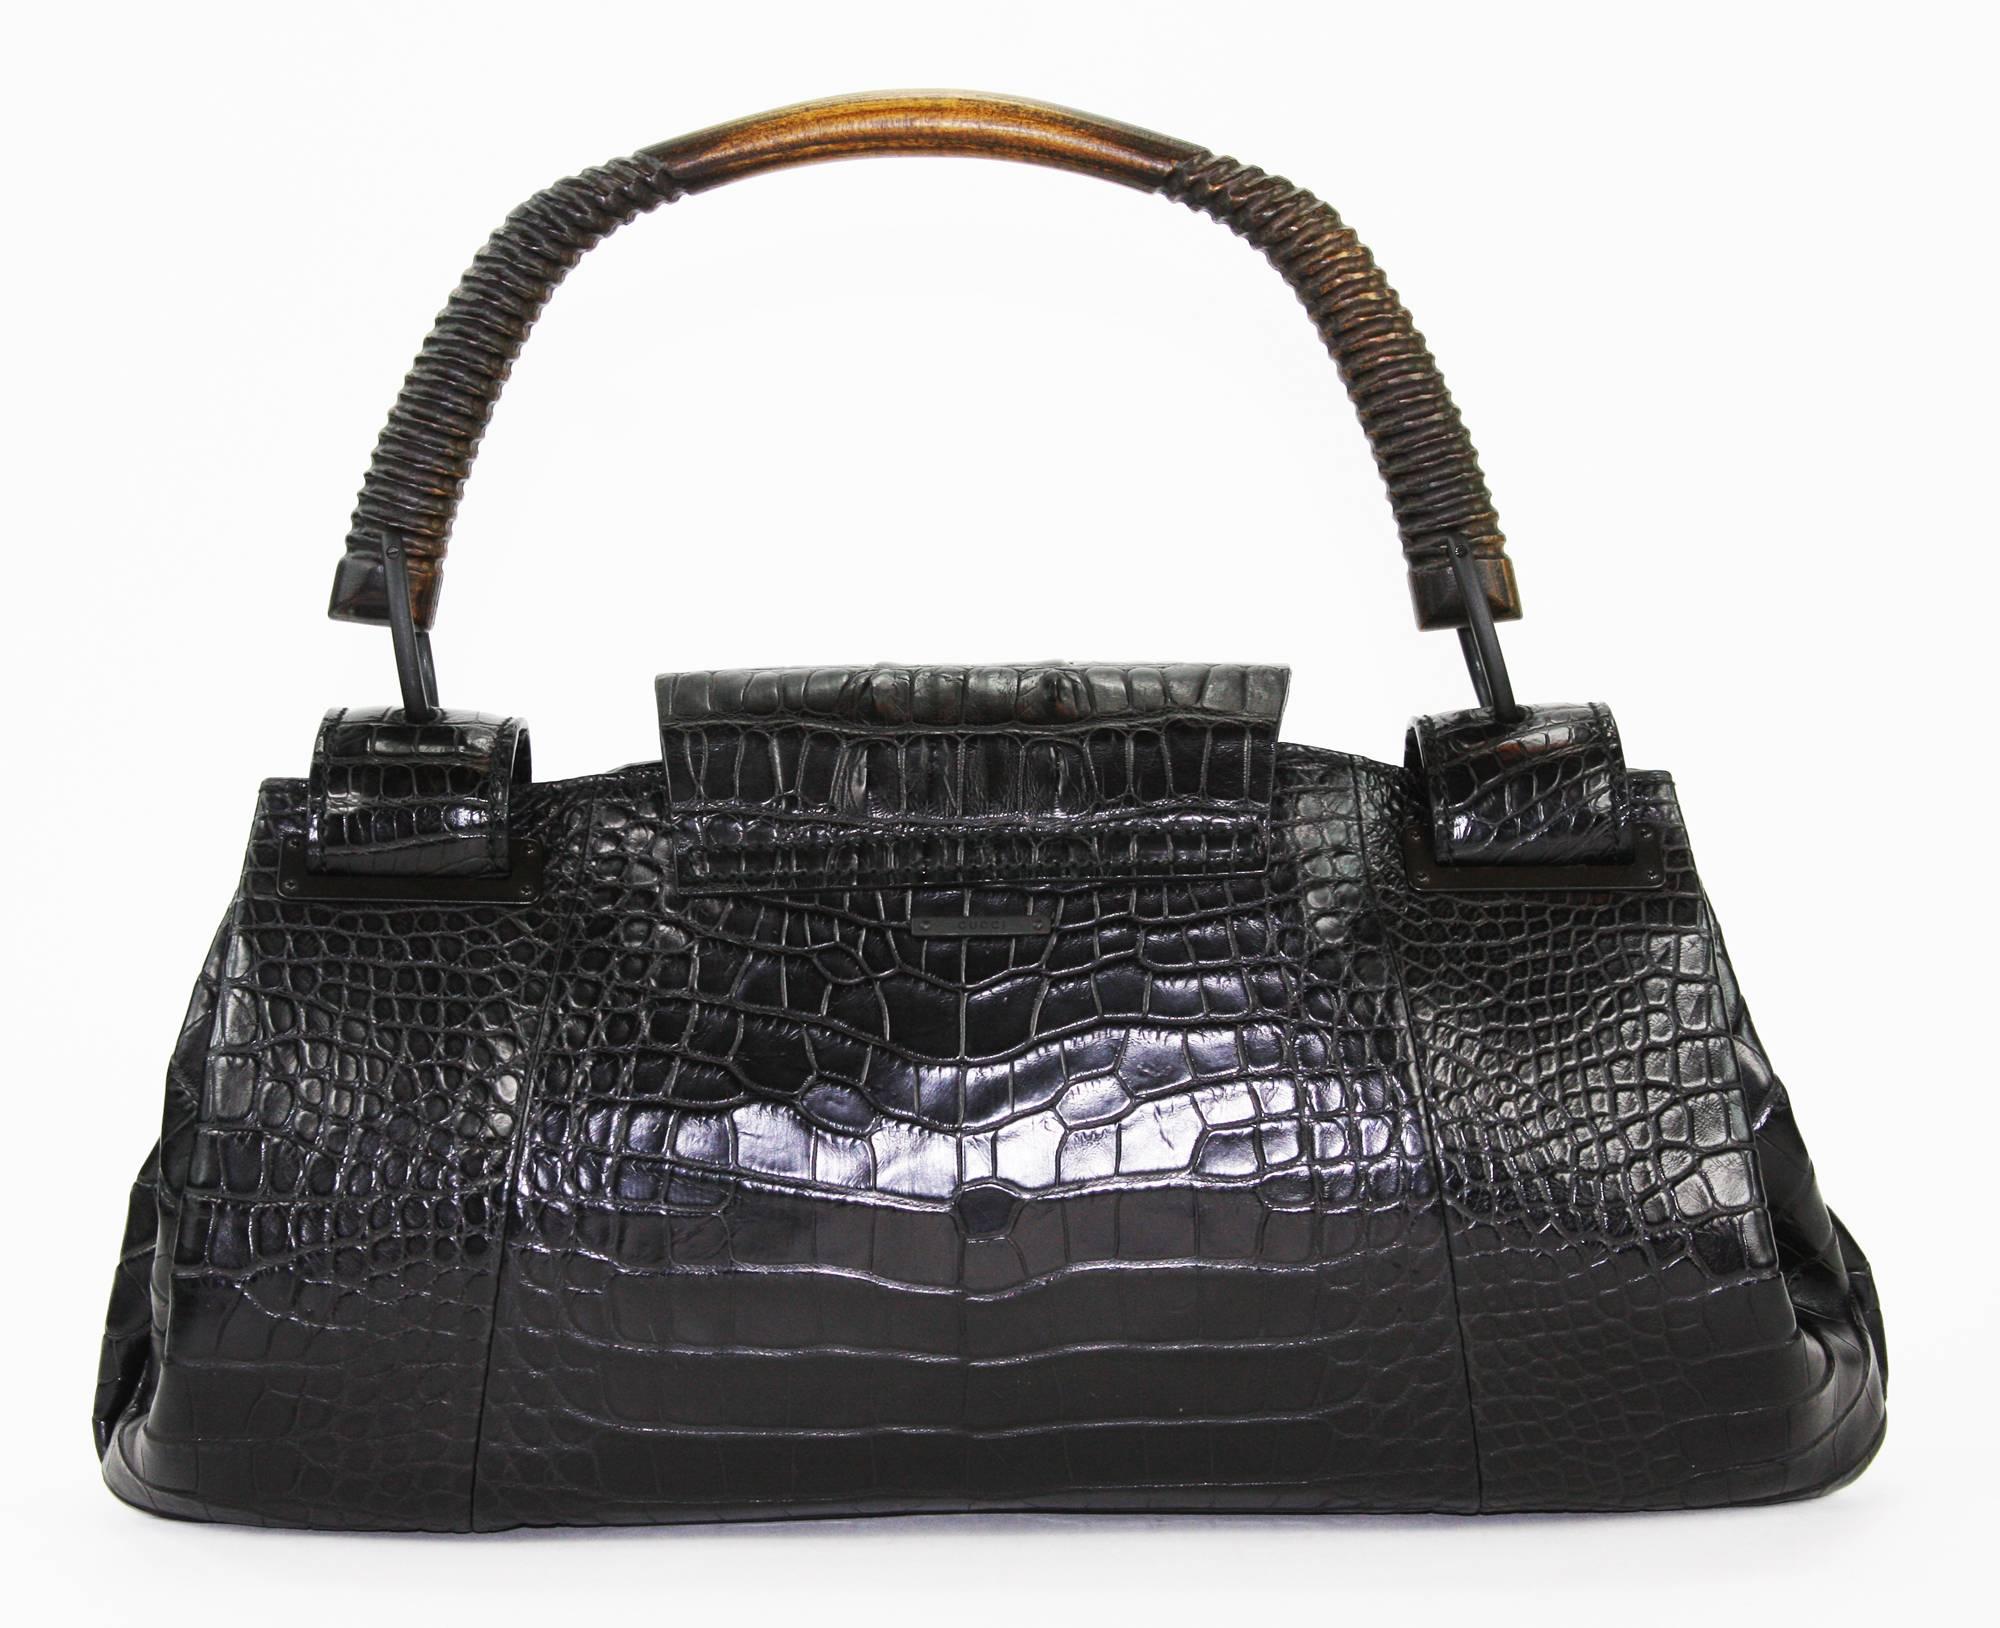 TOM FORD for GUCCI F/W 2002 AD Crocodile Black Handle Bag  1